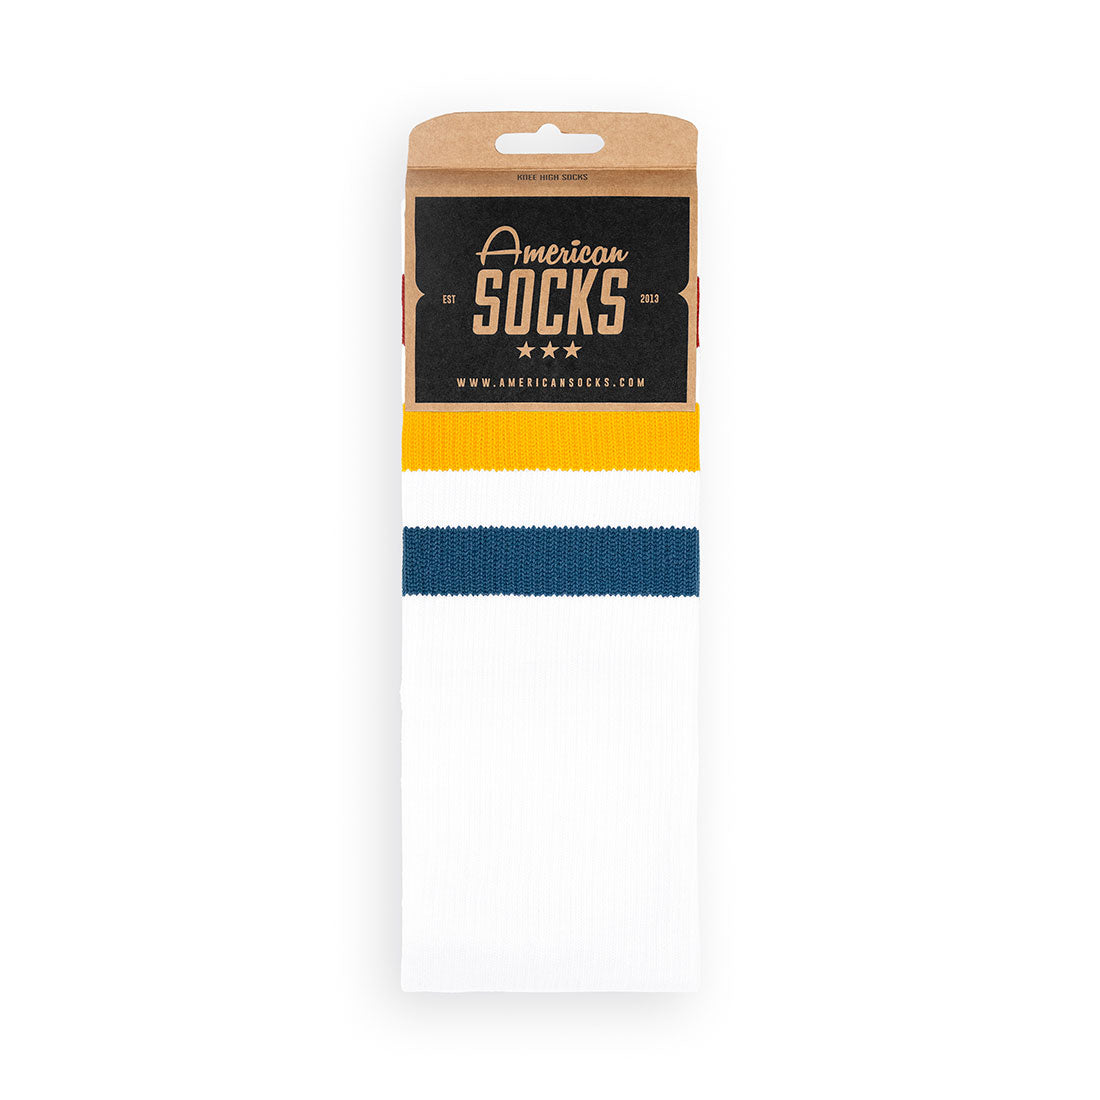 American Socks Classic - Stifler Apparel Socks